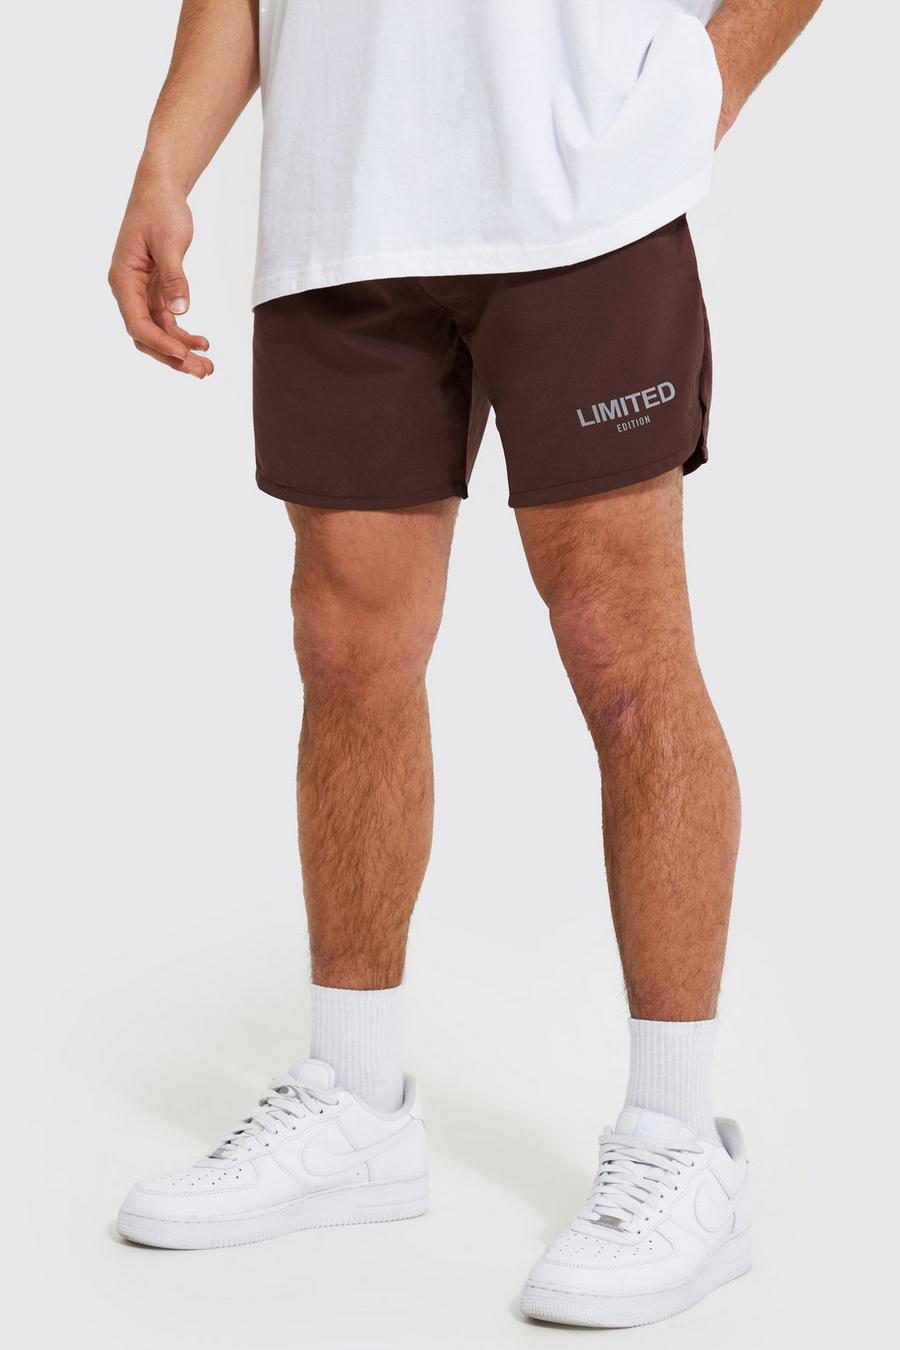 Pantalón corto Regular Limited de tela shell aterciopelada, Chocolate marrón